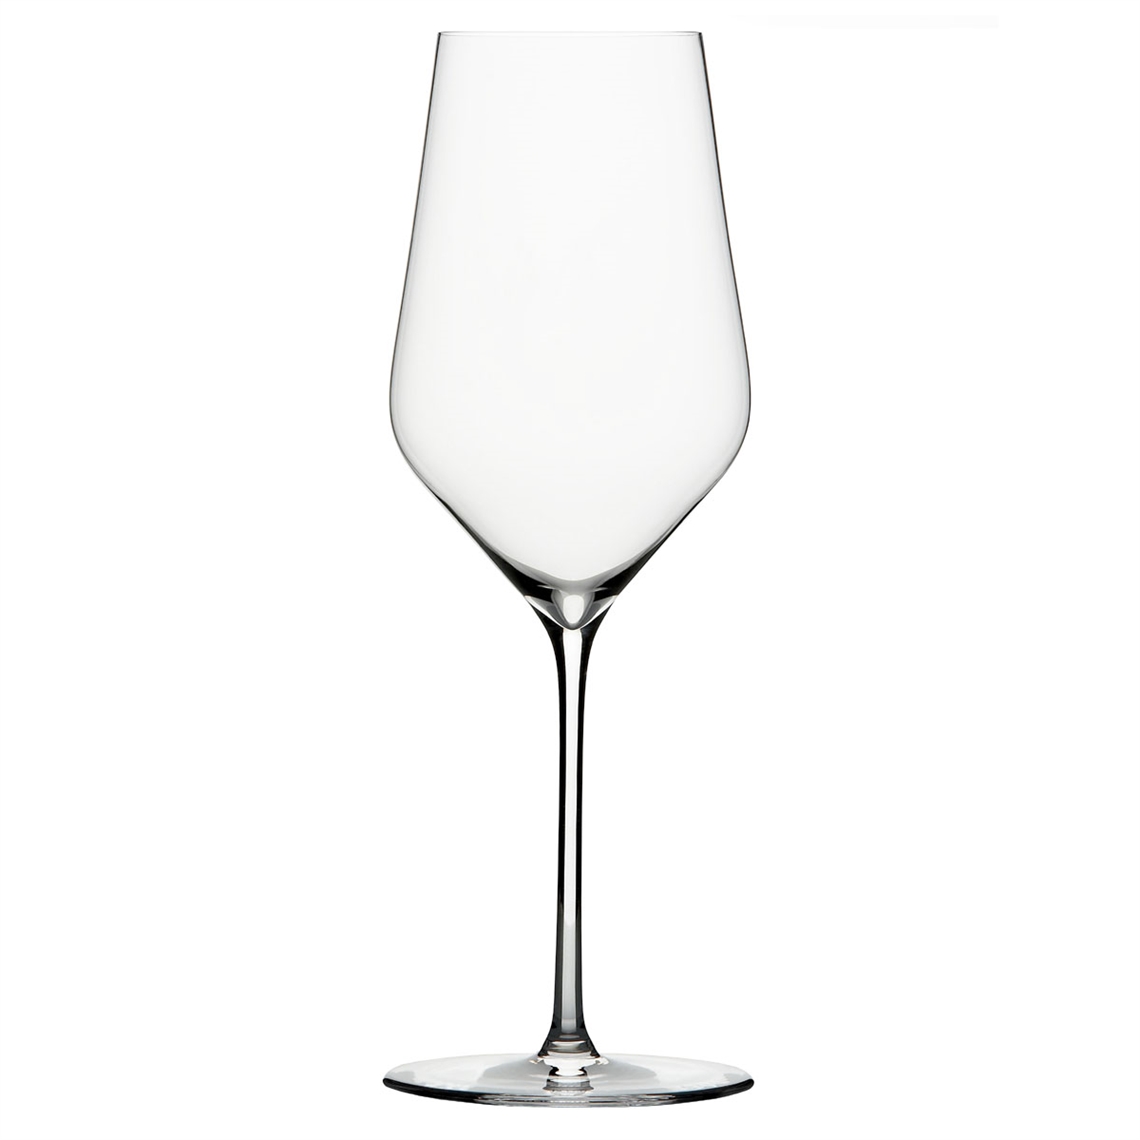 Zalto Denk Art White Wine Glass - Set of 6